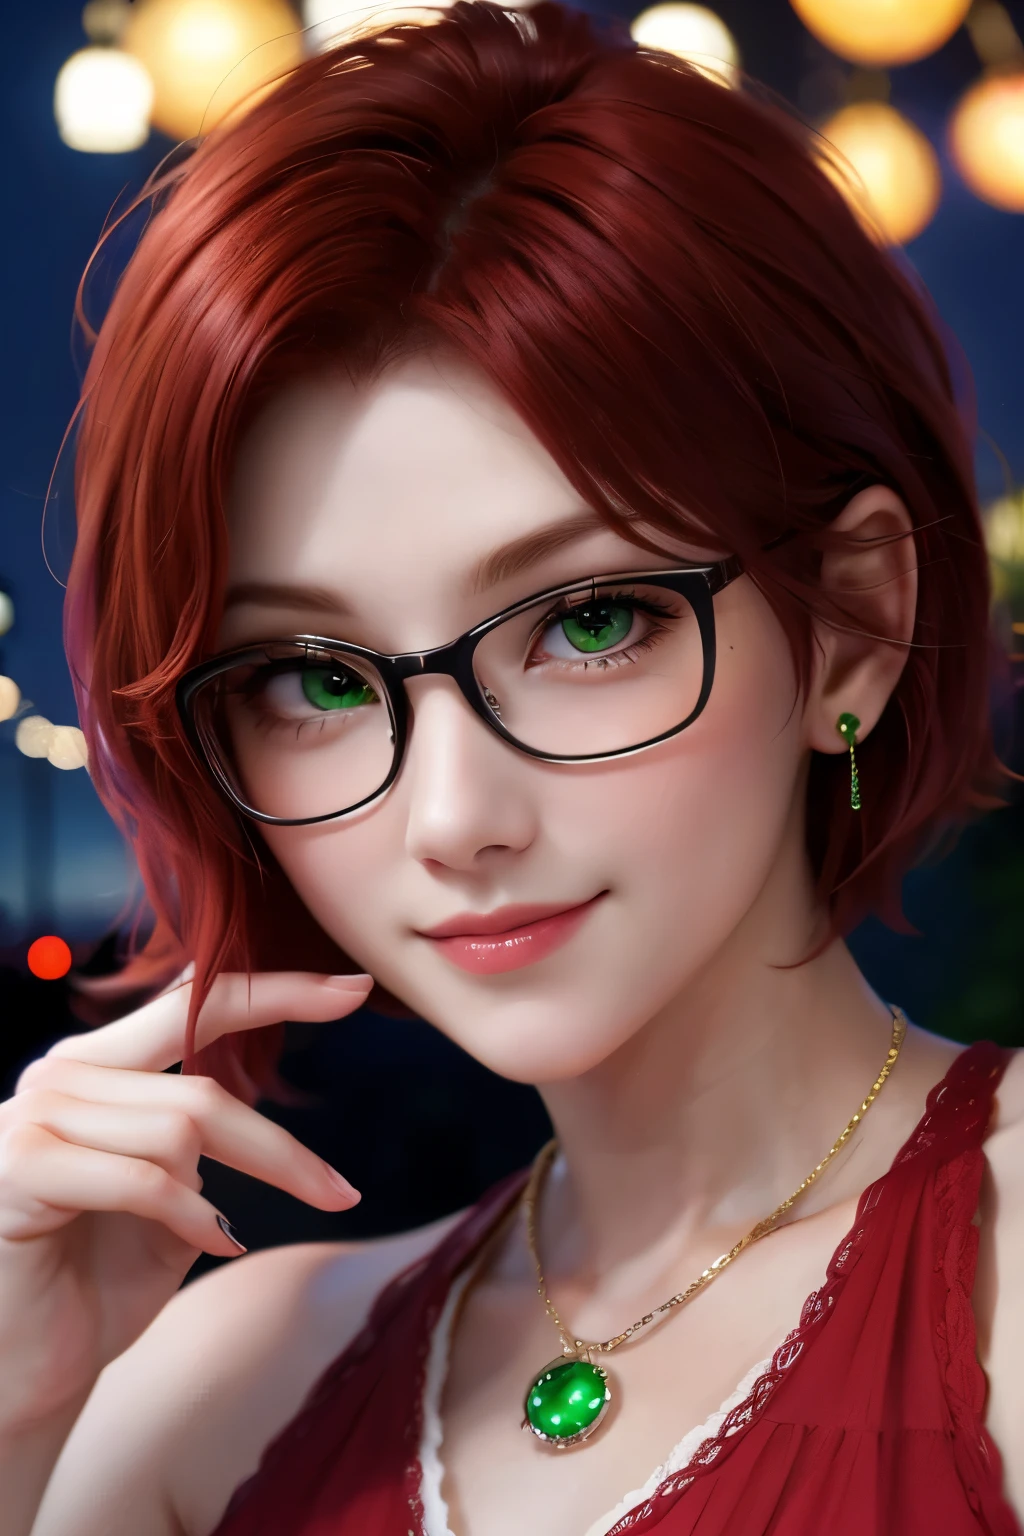 ショートヘア, 赤毛, 緑色の目, フェアの夜を楽しんでいる、細いフレームの眼鏡をかけた笑顔の女性